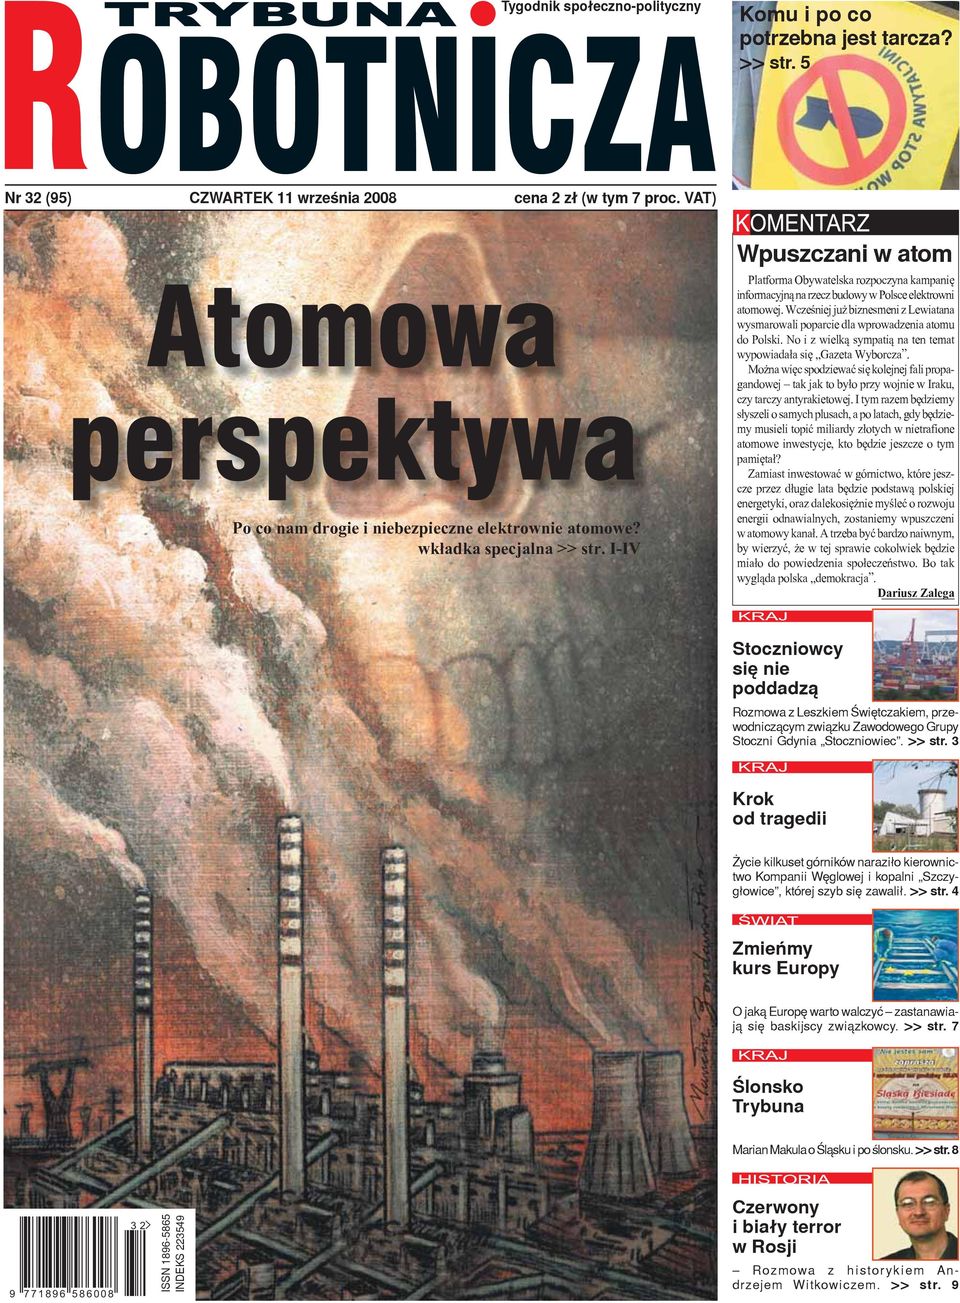 I-IV Wpuszczani w atom Platforma Obywatelska rozpoczyna kampanię informacyjną na rzecz budowy w Polsce elektrowni atomowej.